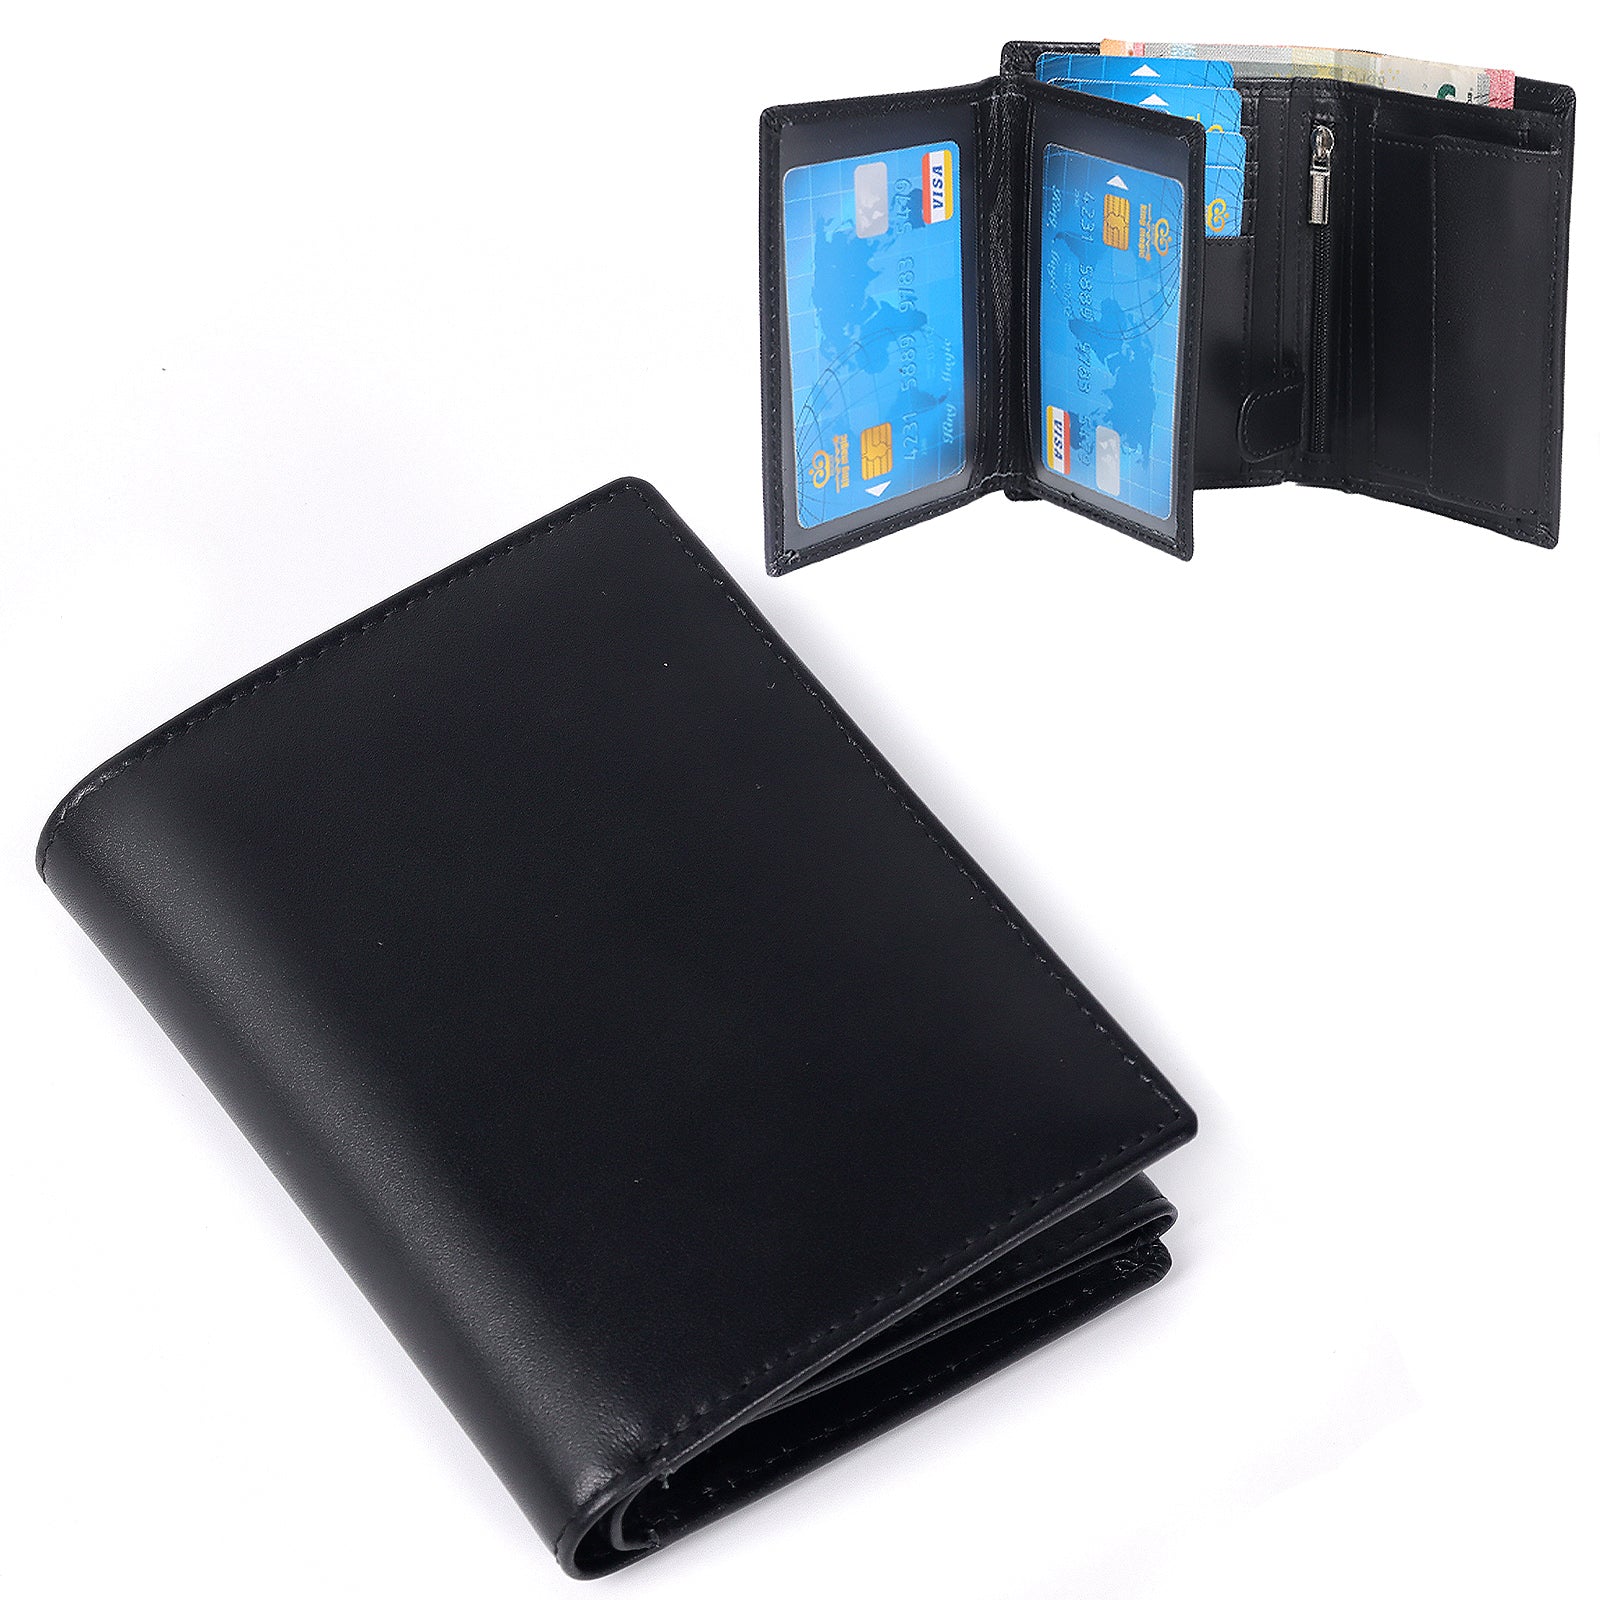 TAN.TOMI Herrenbrieftasche im minimalistischen Stil mit großer Kapazität für die Aufbewahrung verschiedener Karten, Ausweisdokumente und Geldscheine, ausgestattet mit einer RFID-Schutzschicht.